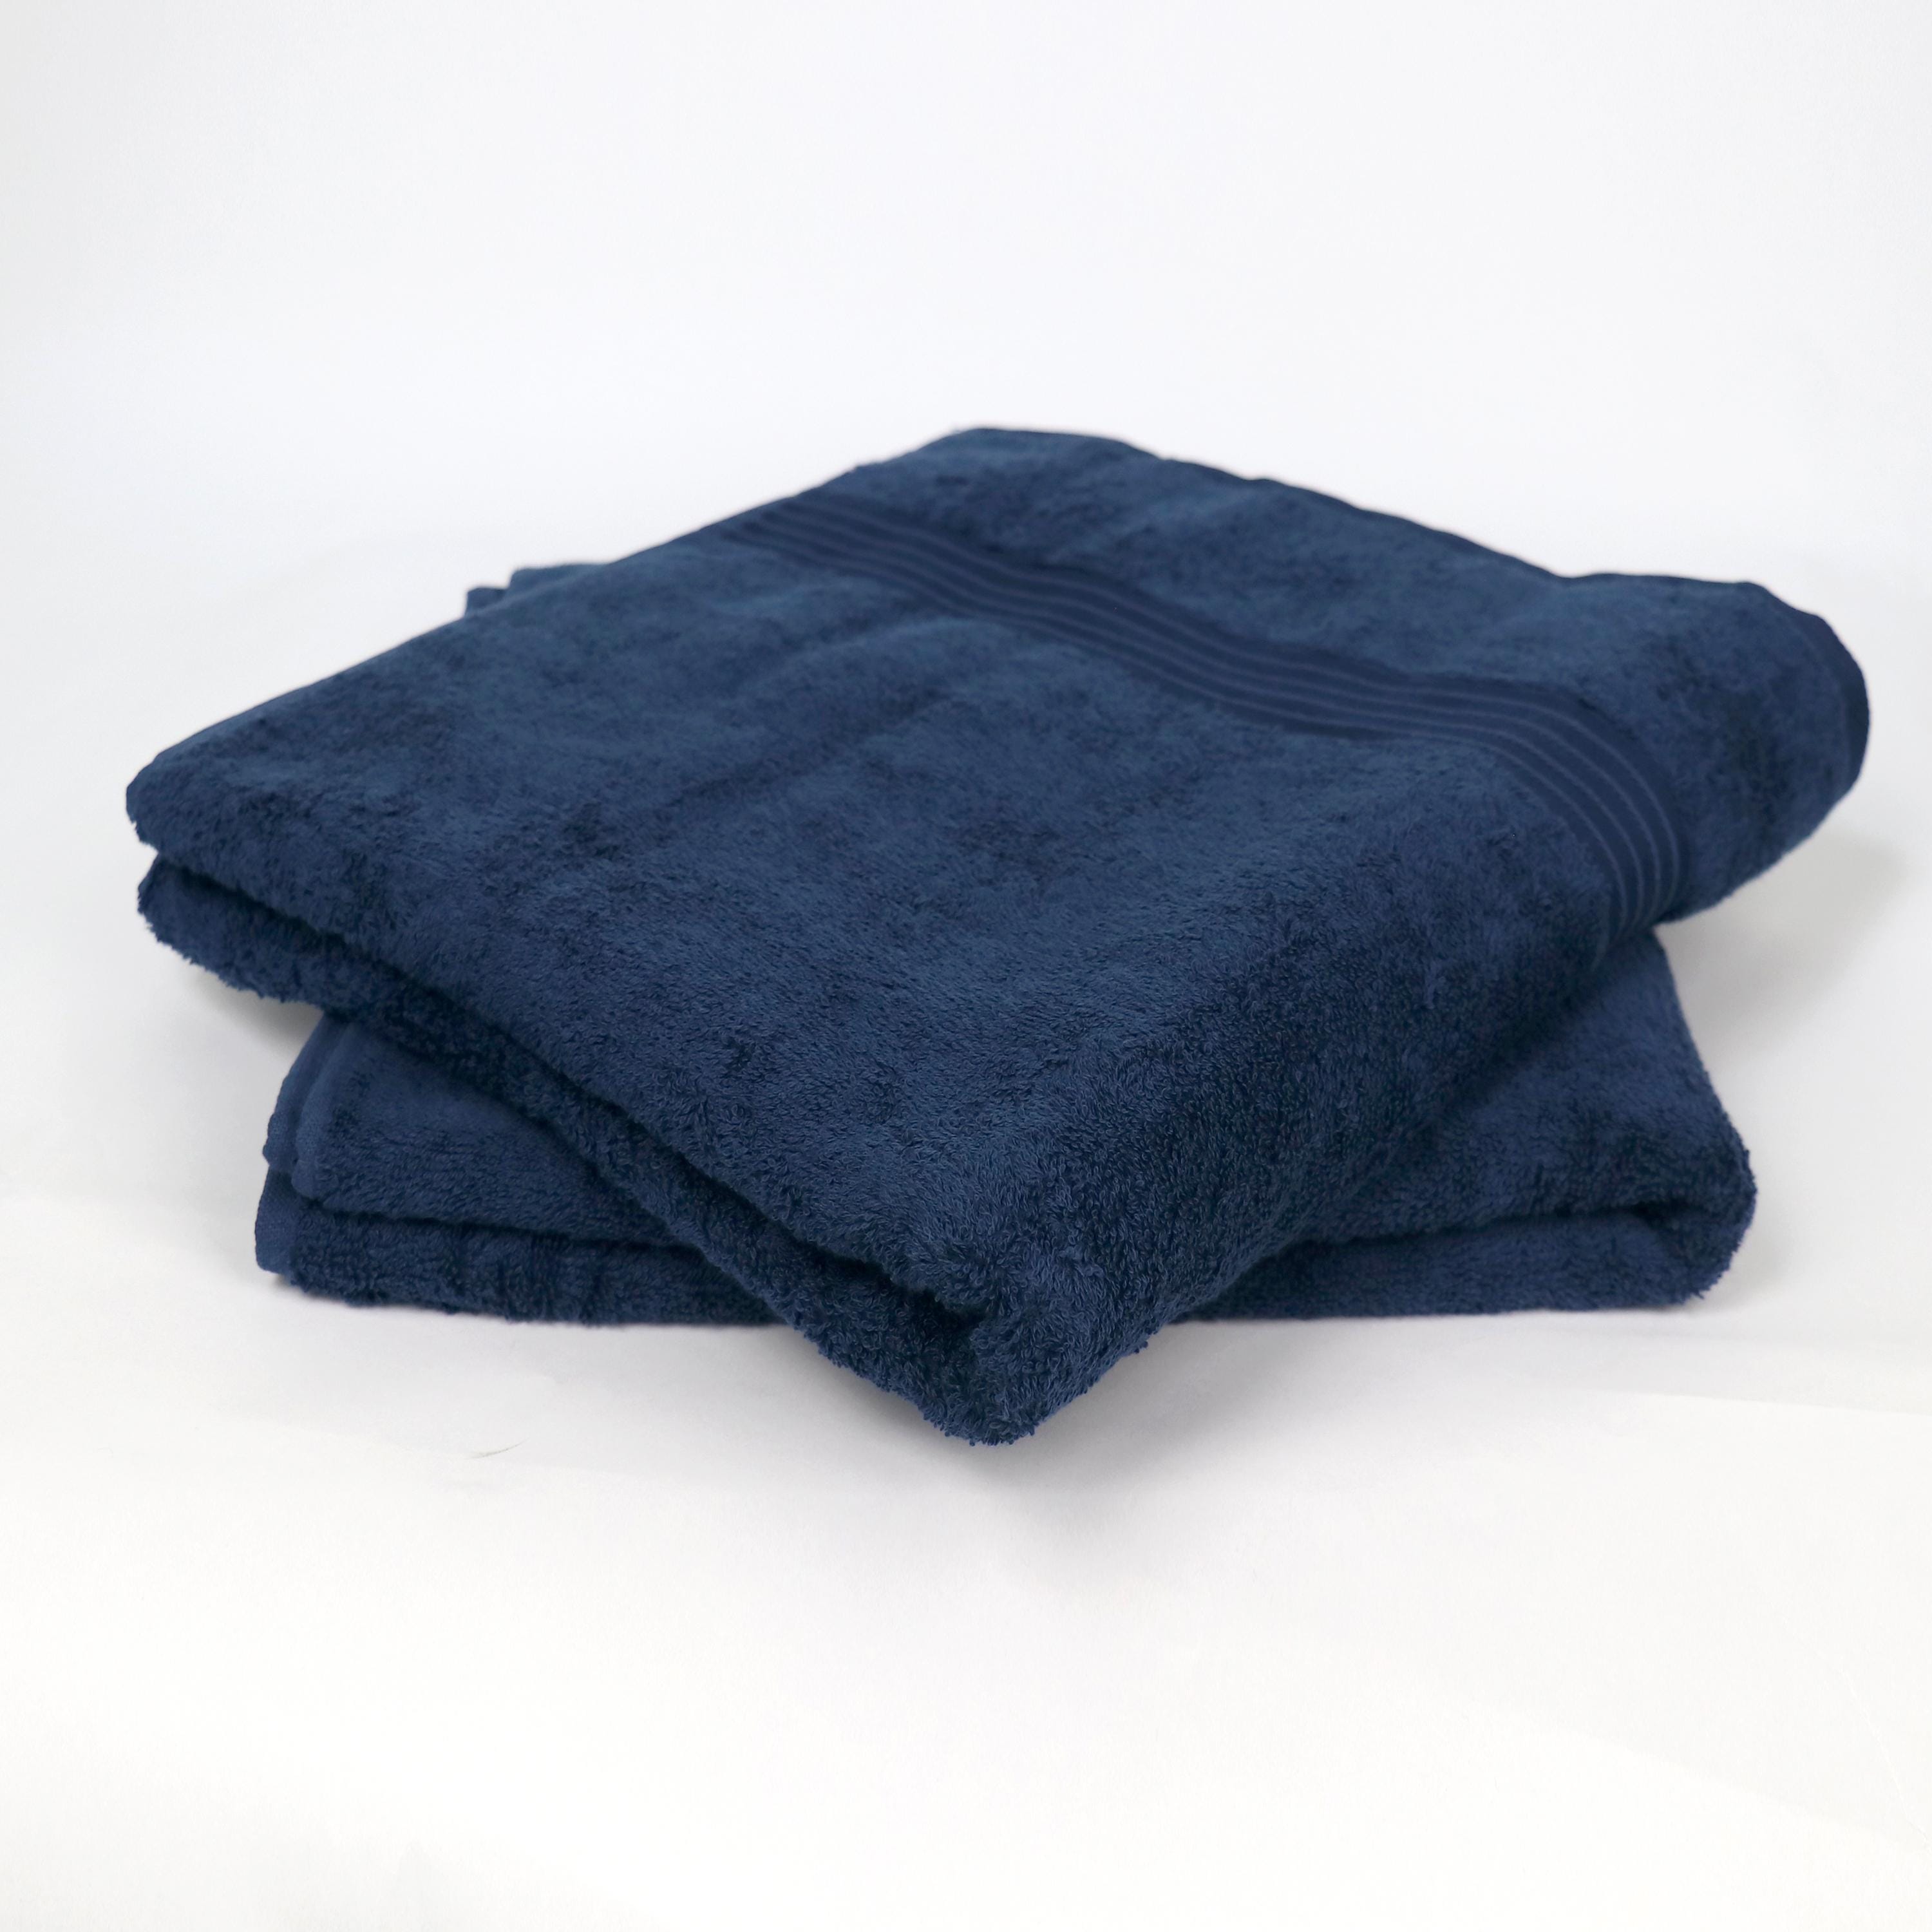 Cotton Home Bath Towel 2-piece Set Navy Blue